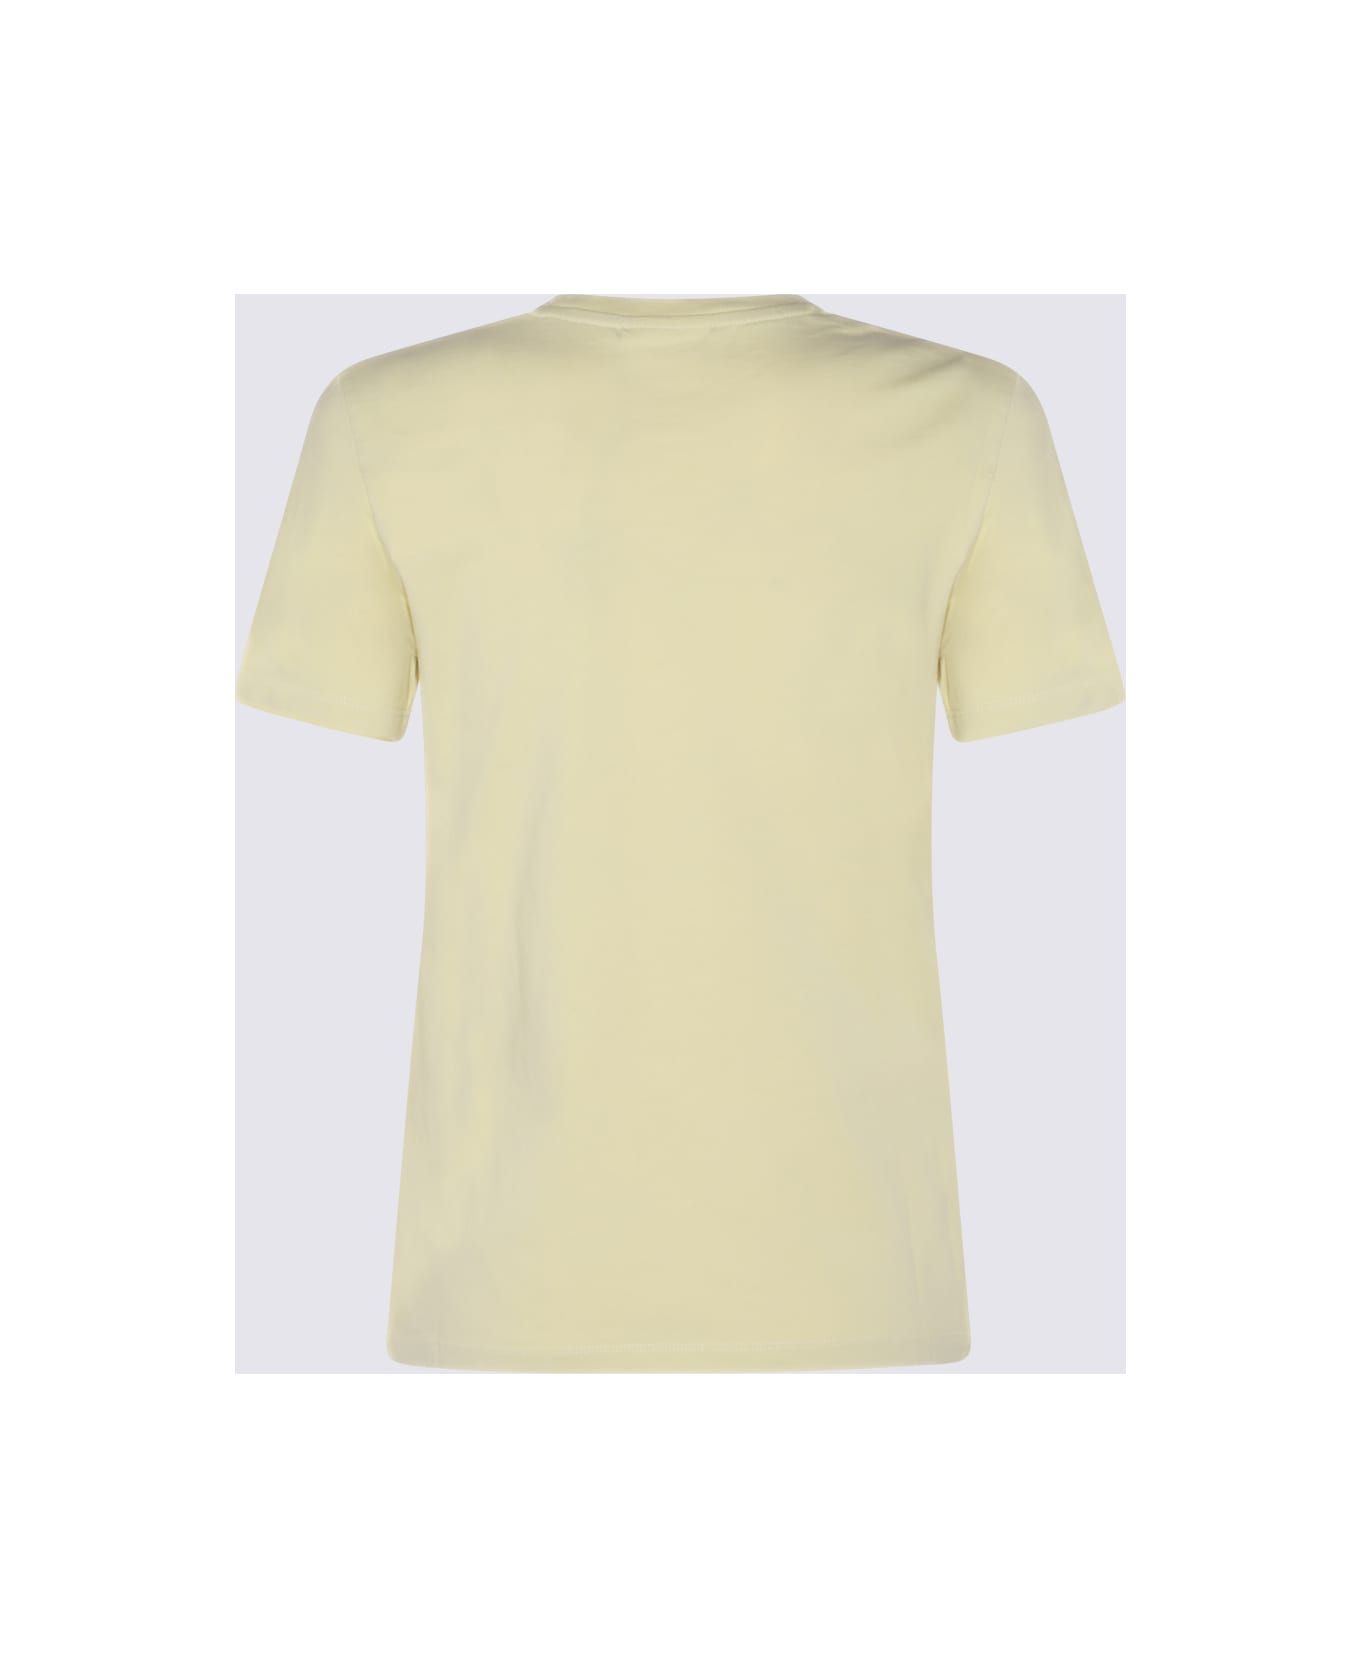 Maison Kitsuné Yellow Cotton Fox Head T-shirt - CHALK YELLOW